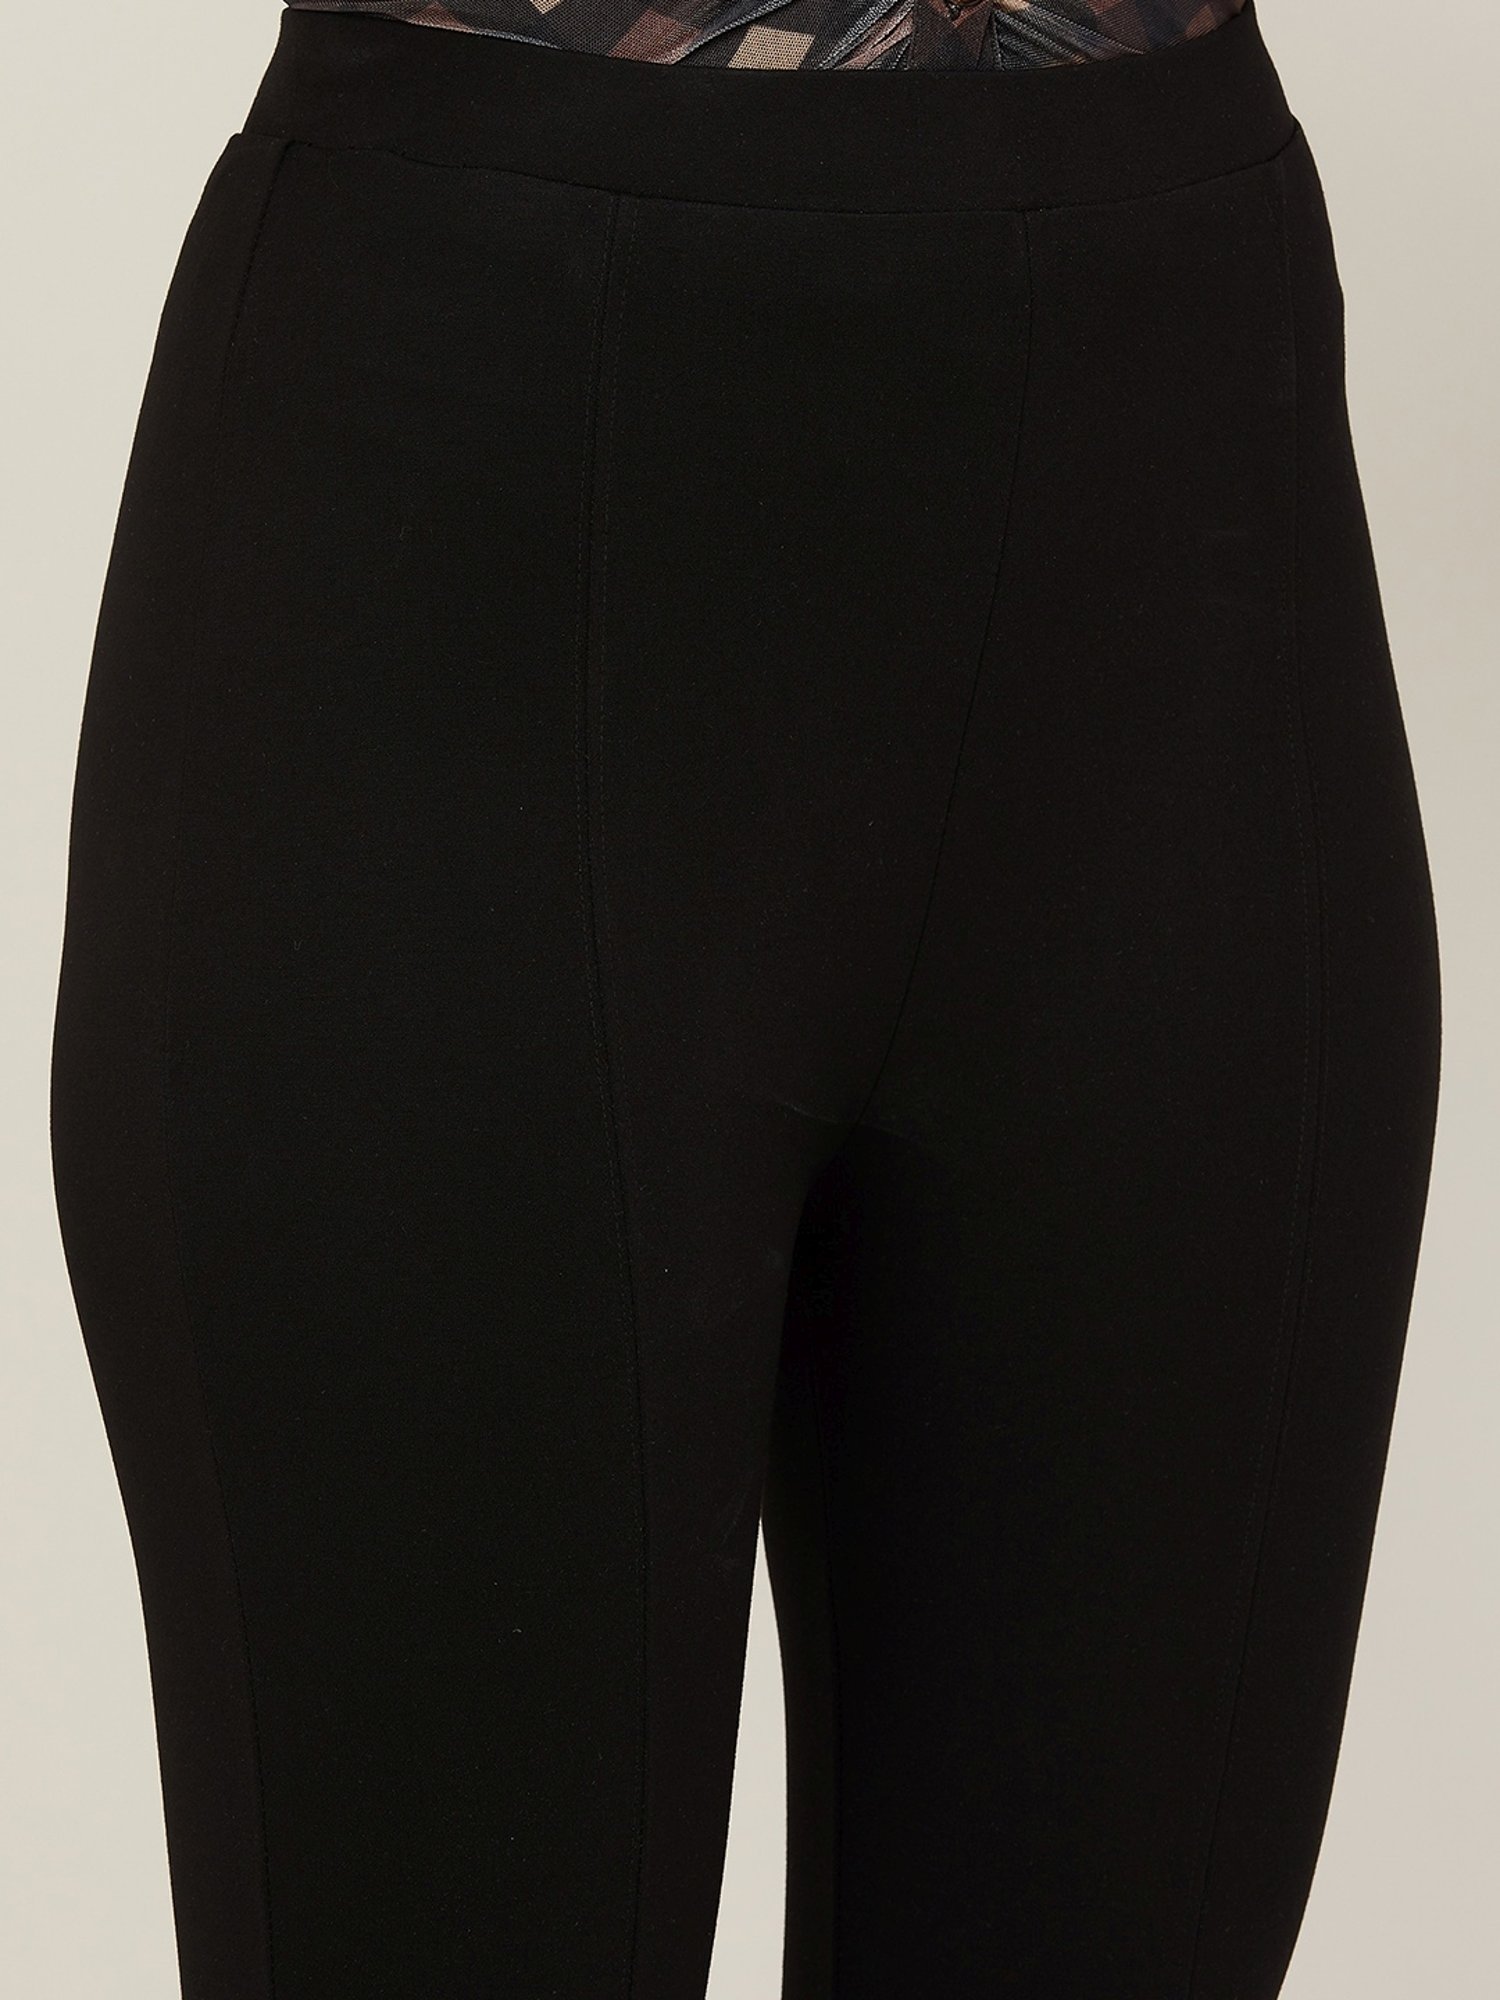 TU Womens Black Trousers Size 12 L32 in – Preworn Ltd